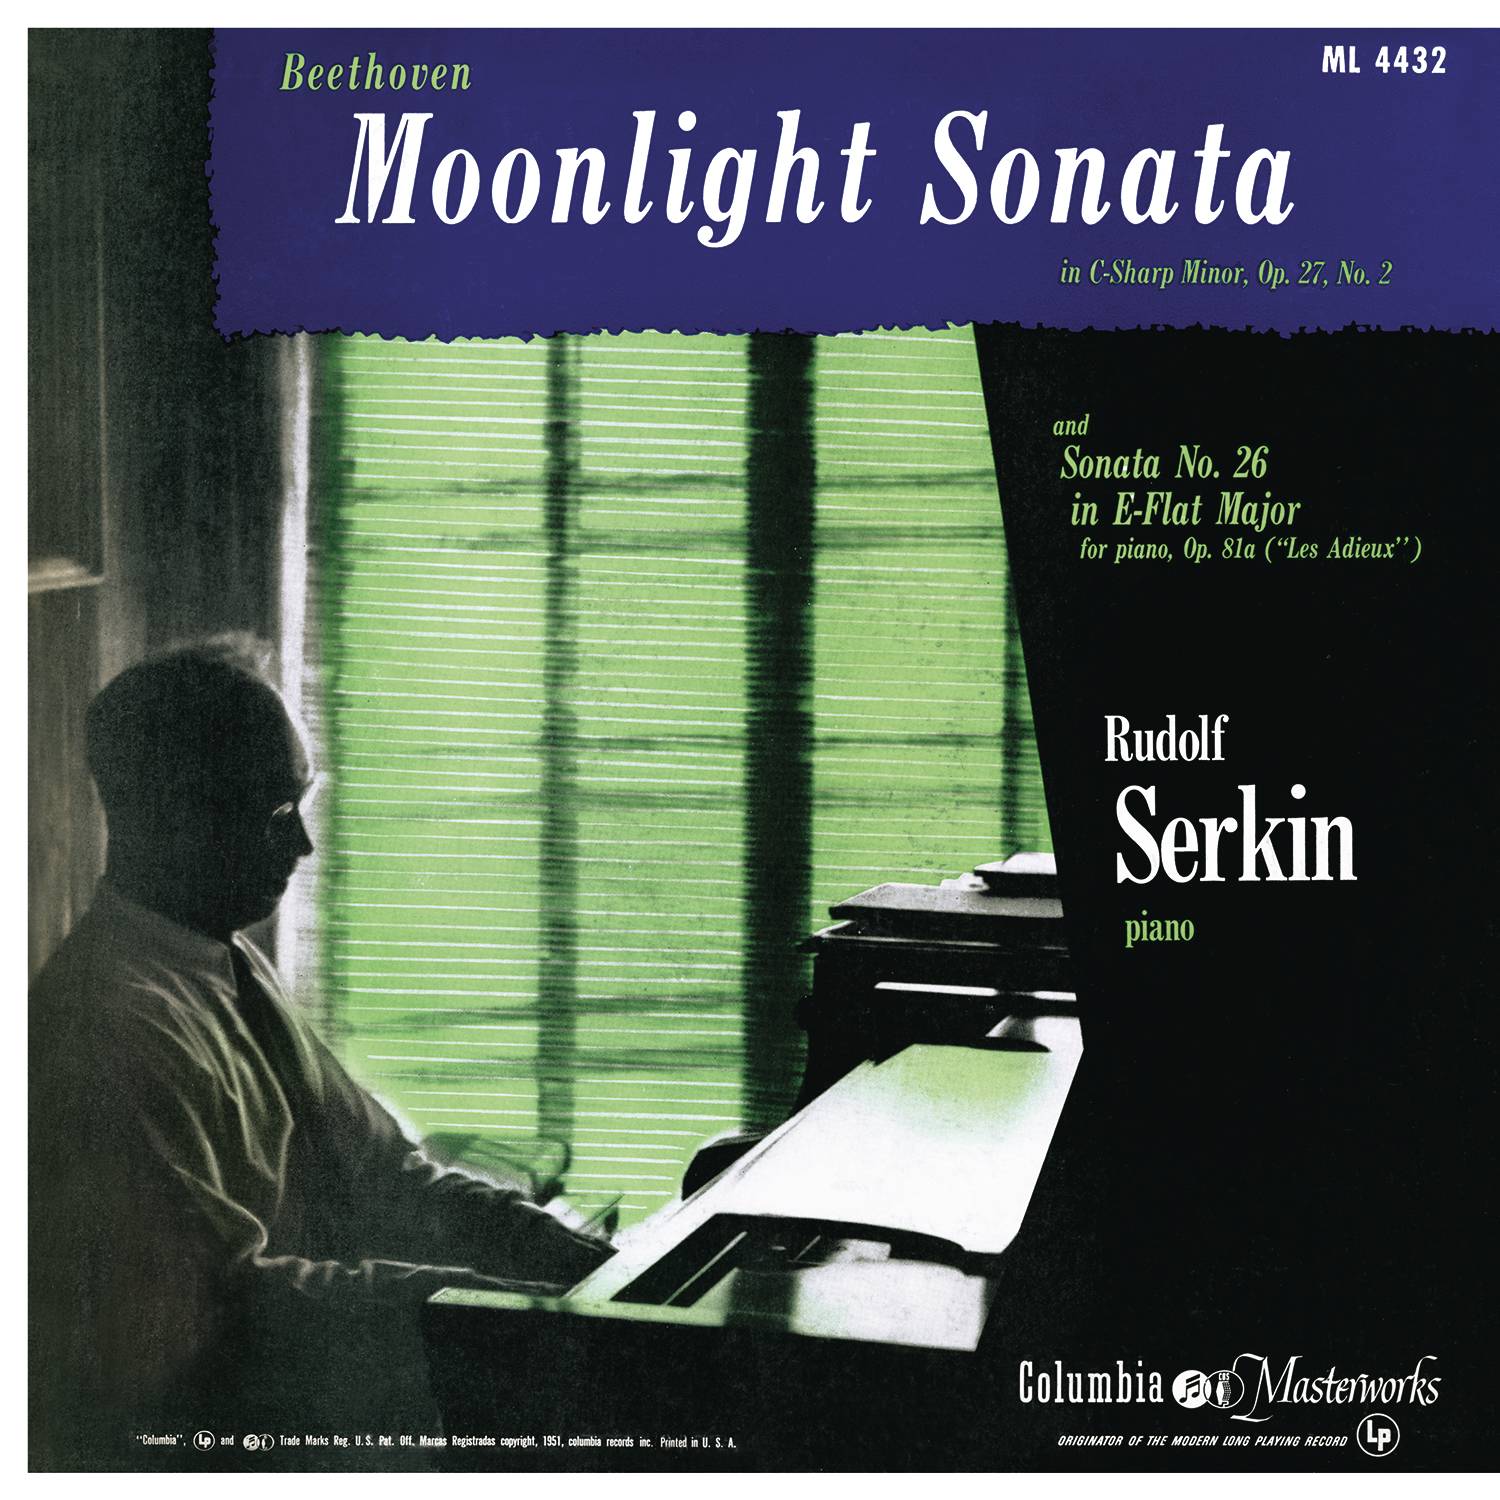 Sonata No. 14 in C-Sharp Minor for Piano, Op. 27, No. 2 "Moonlight": III. Presto agitato